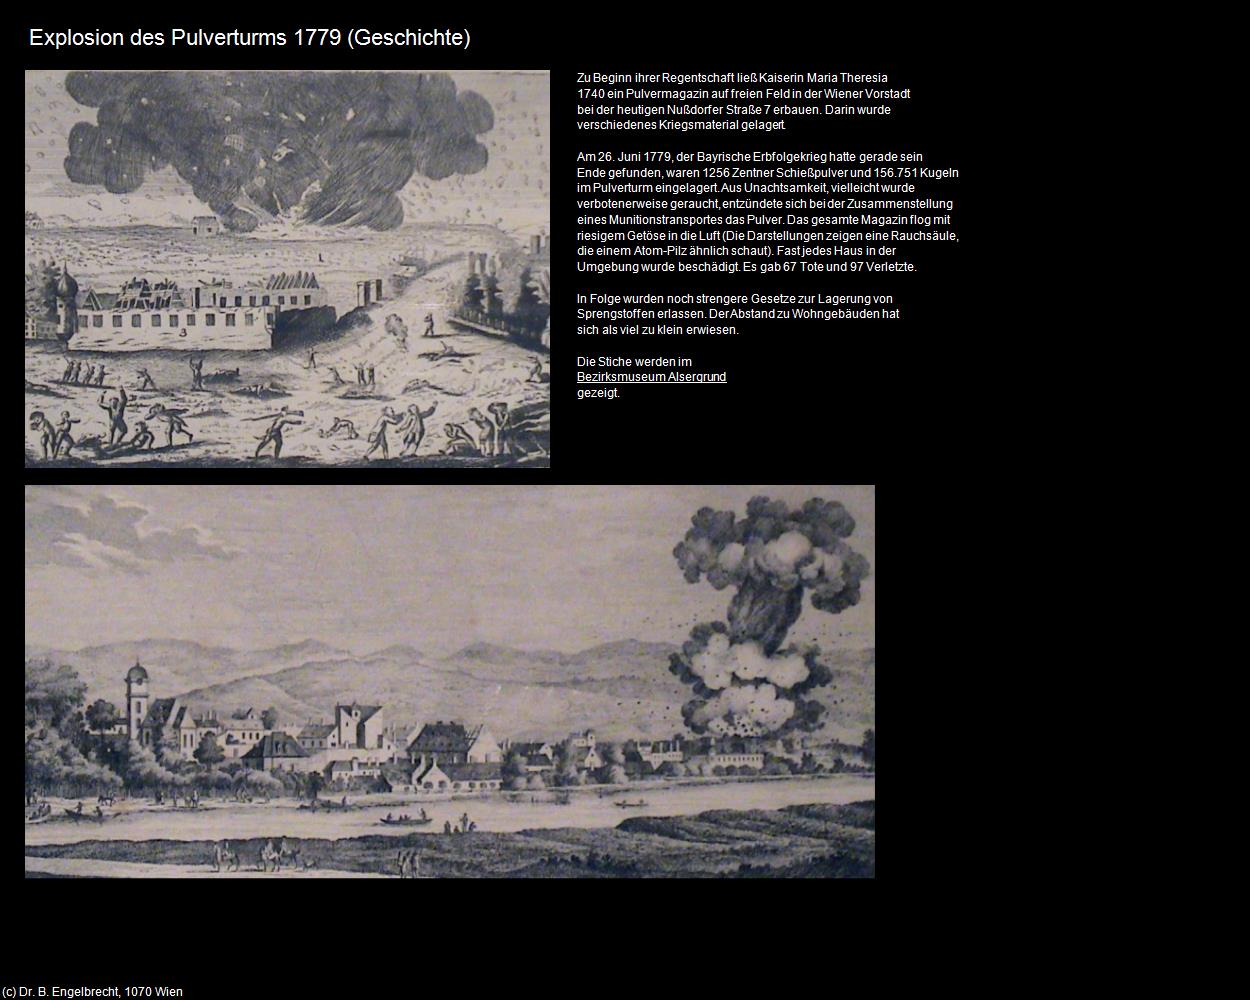 Explosion des Pulverturms 1779 (IX. Bezirk-Alsergrund) in Kulturatlas-WIEN(c)B.Engelbrecht